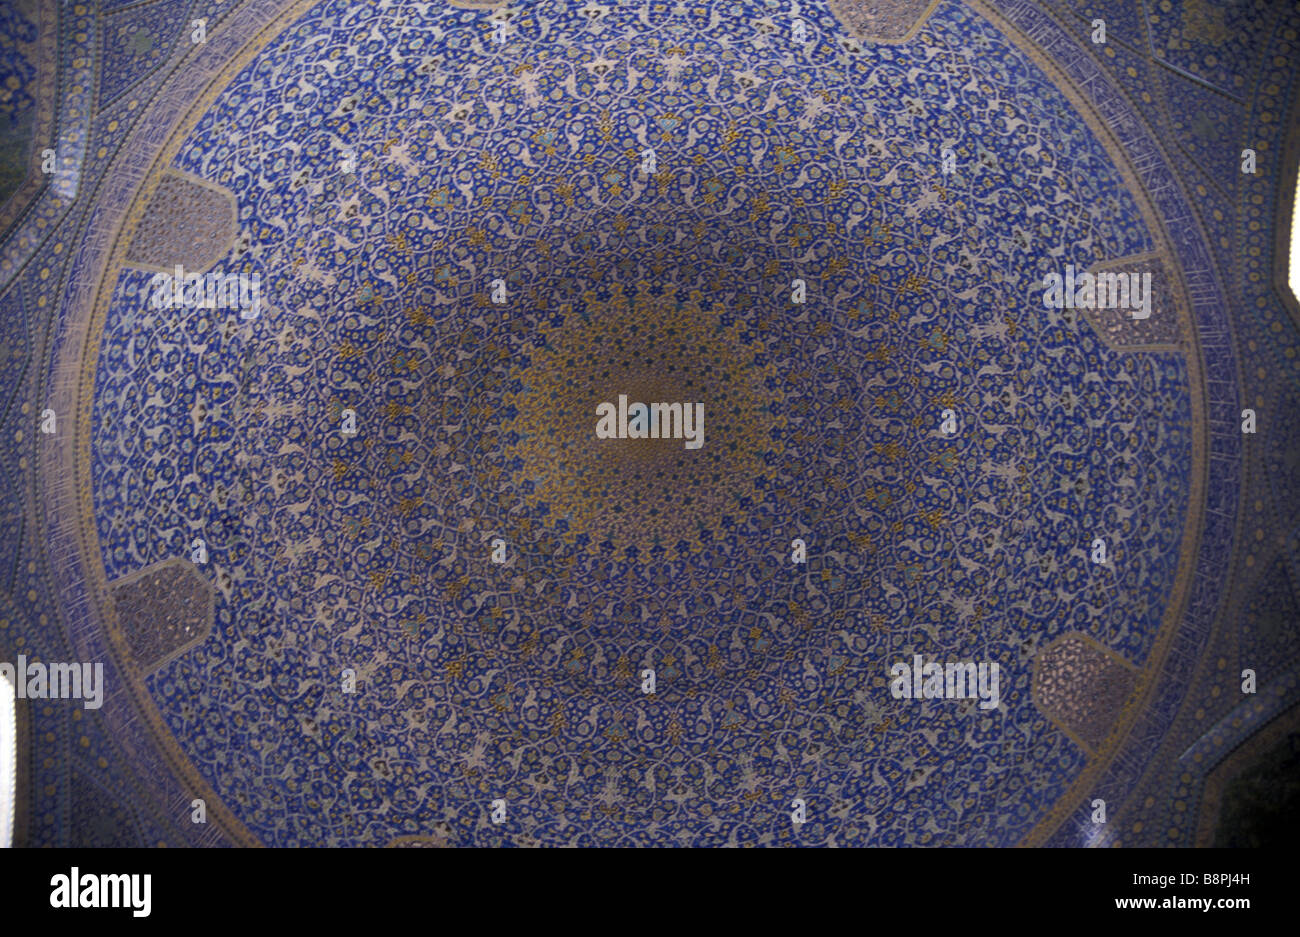 Masjid e Imam interior of main dome Isfahan Iran Stock Photo